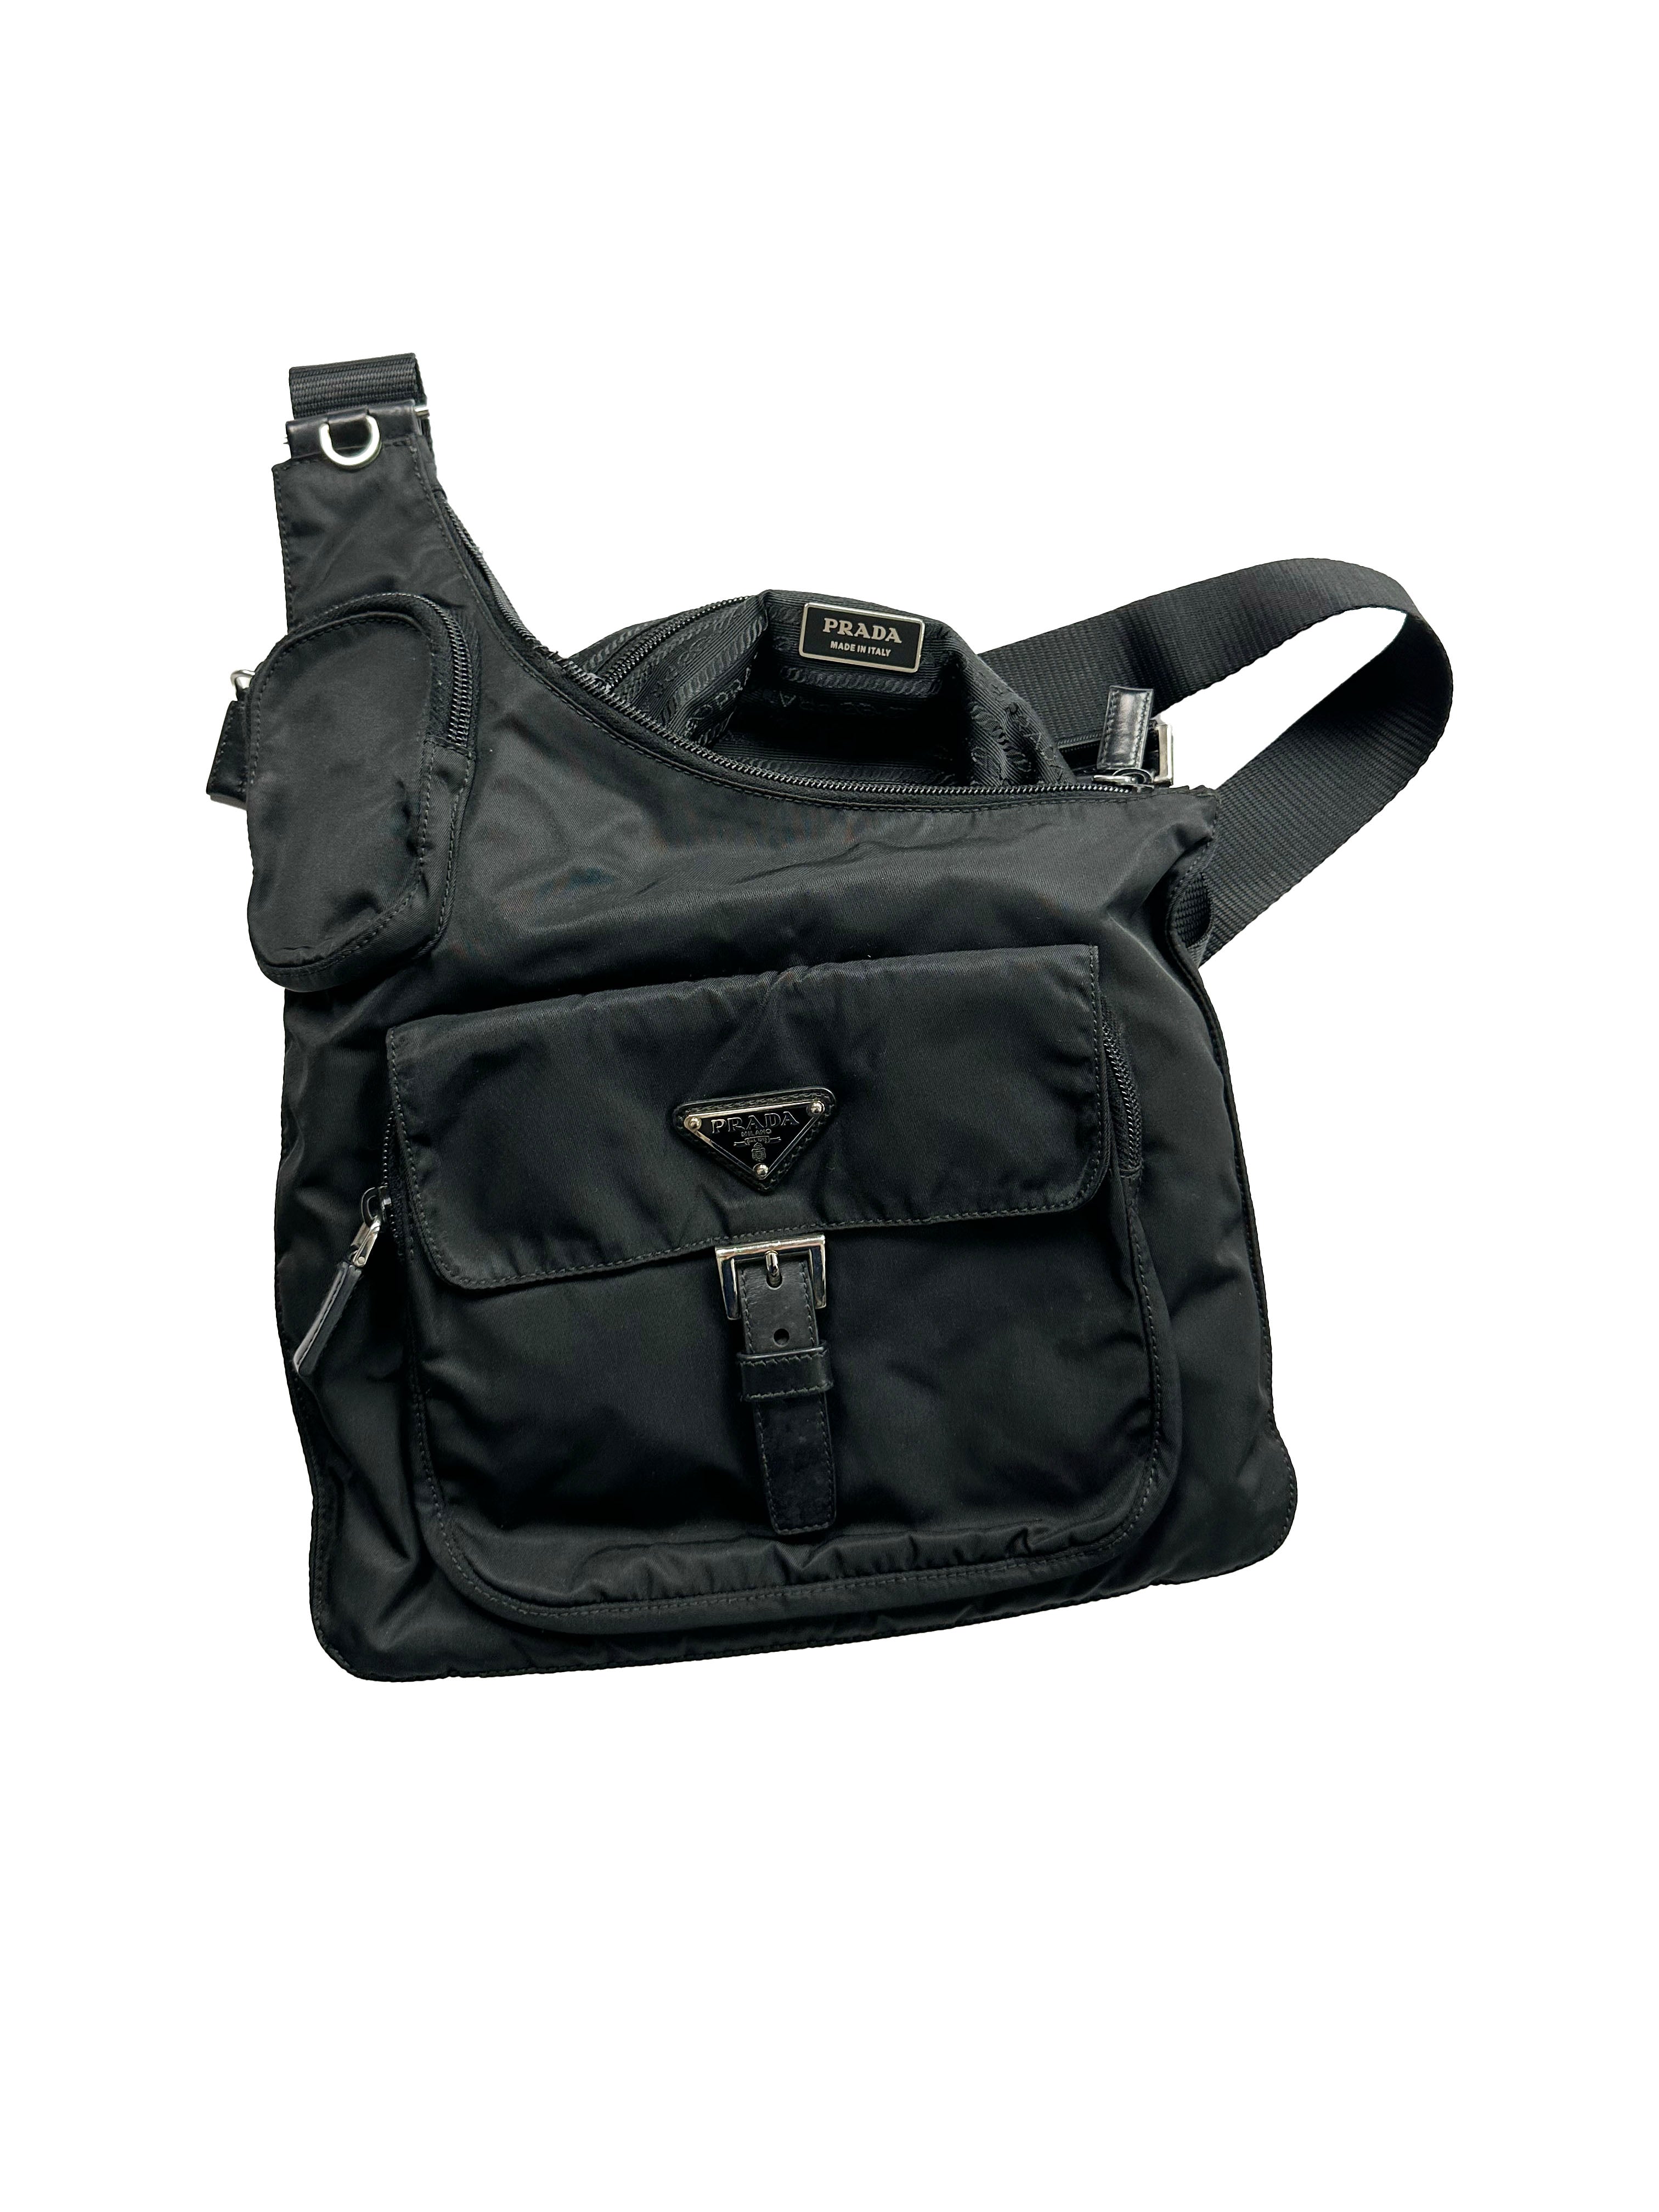 Prada Milano Black Multi Pocket Side Bag 2006